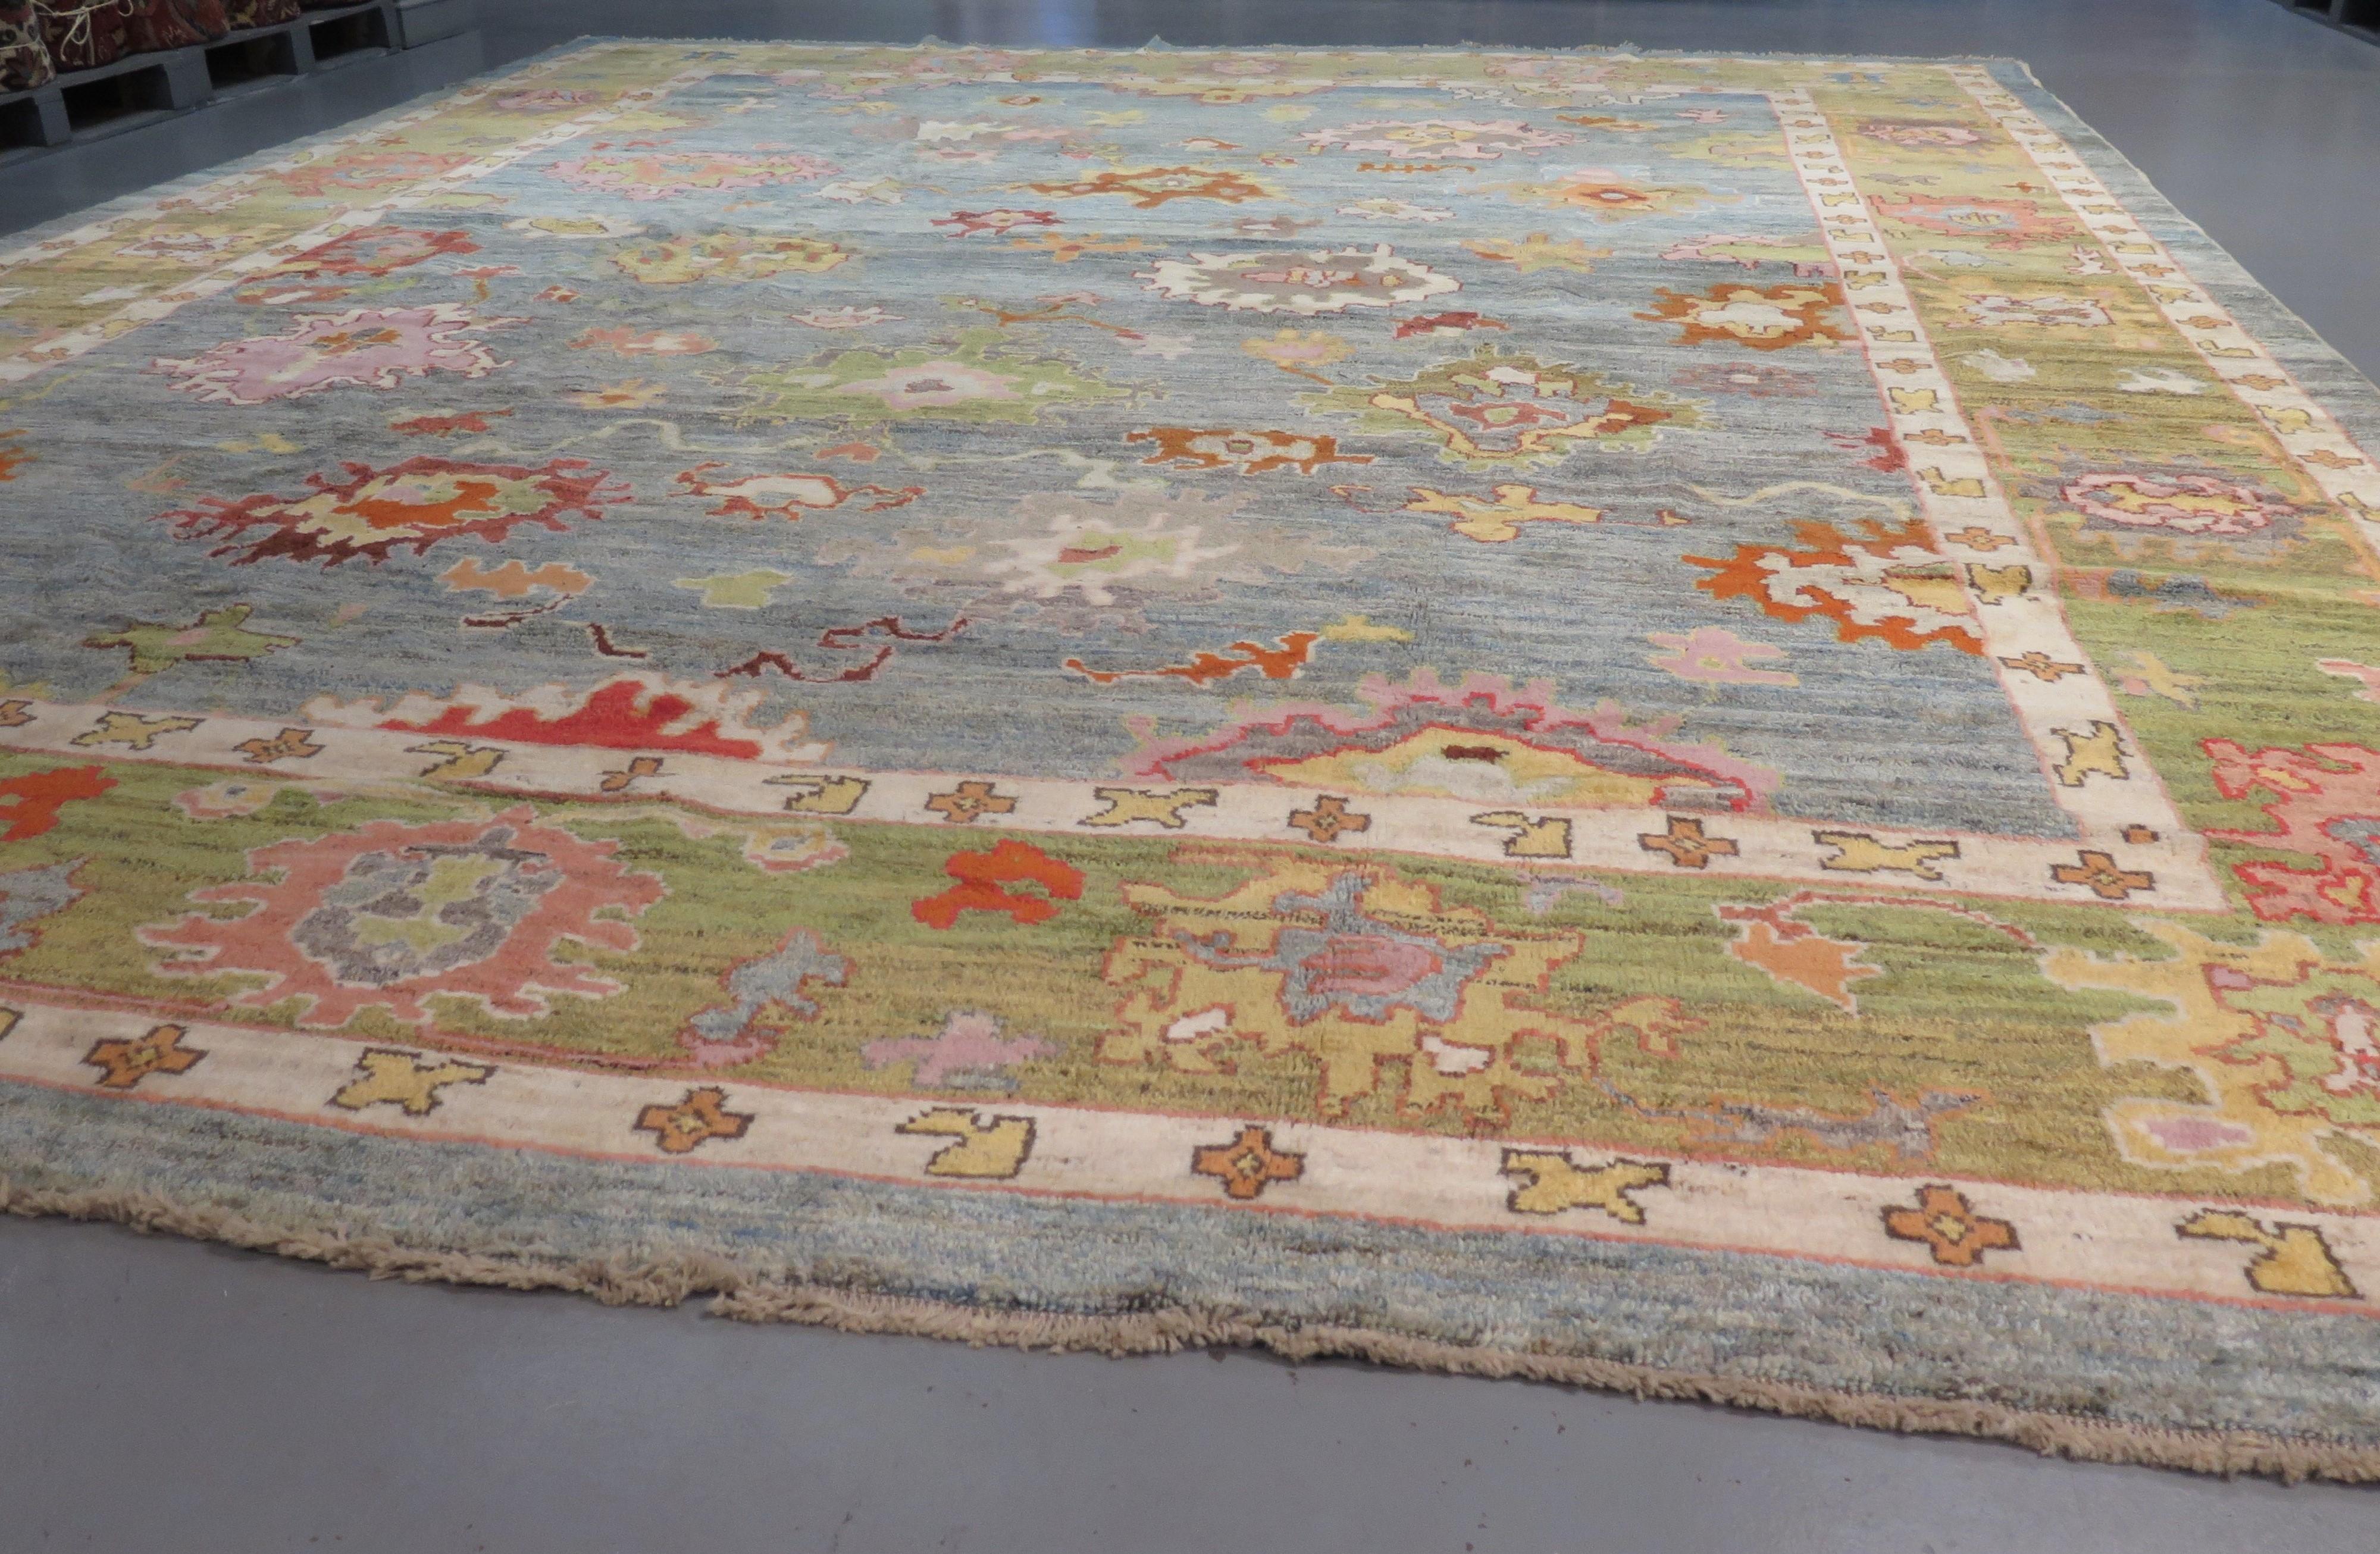 Schöner Oushak-Teppich, handgewebt in der Türkei aus glänzender Wolle und pflanzengefärbten Farben. Eine moderne Interpretation der Oushak-Teppiche aus dem 19. Jahrhundert mit einer großformatigen Zeichnung und einer harmonischen Vielfalt an